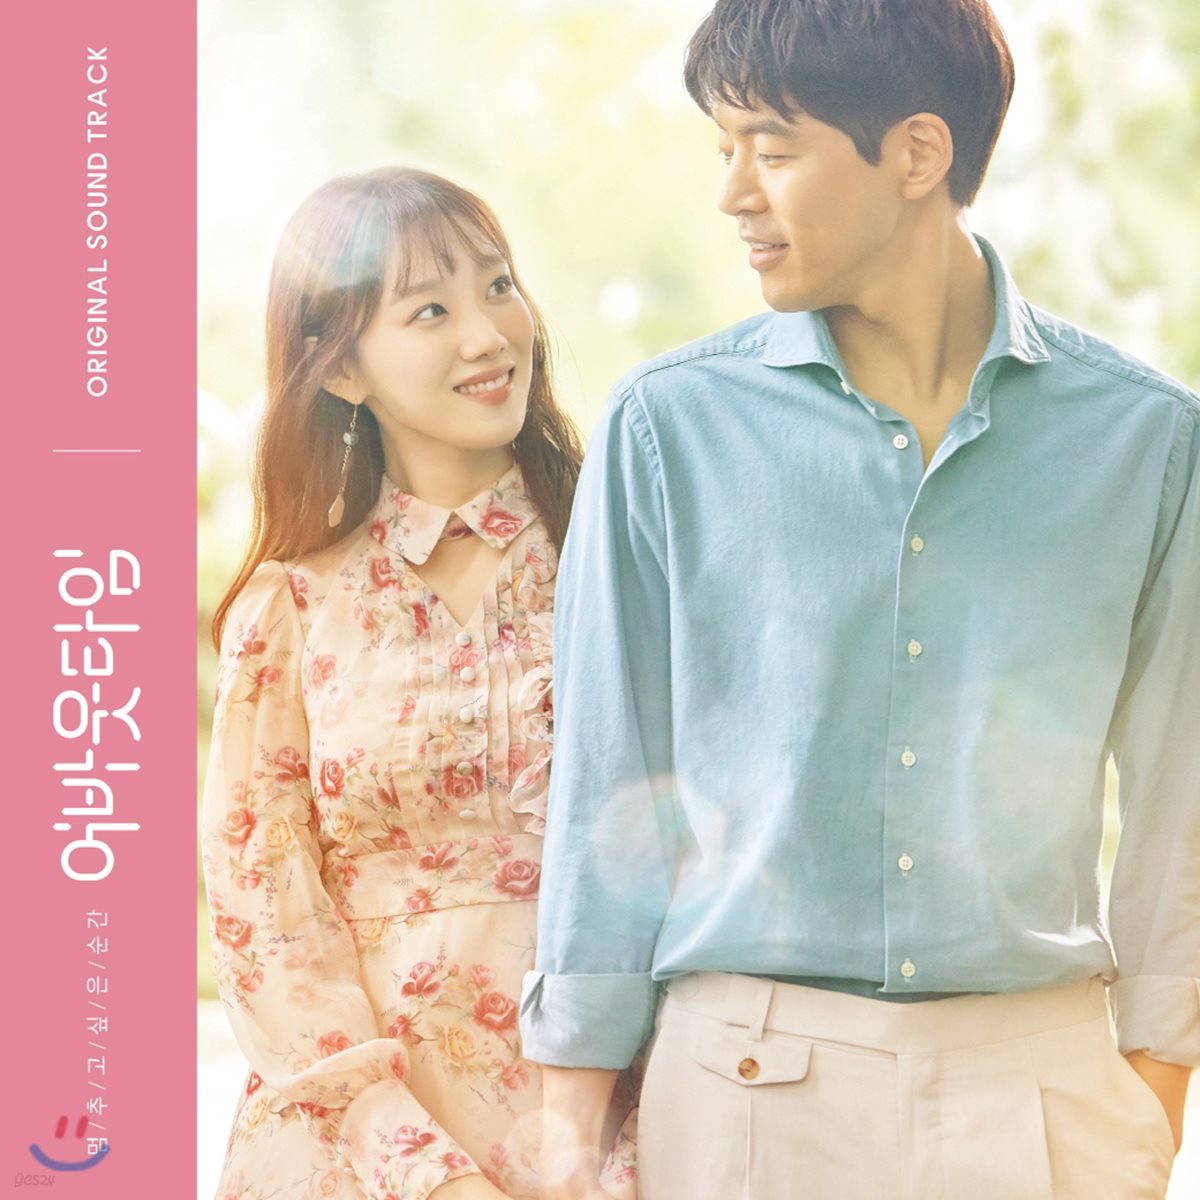 멈추고 싶은 순간 : 어바웃타임 (tvN 월화드라마) OST